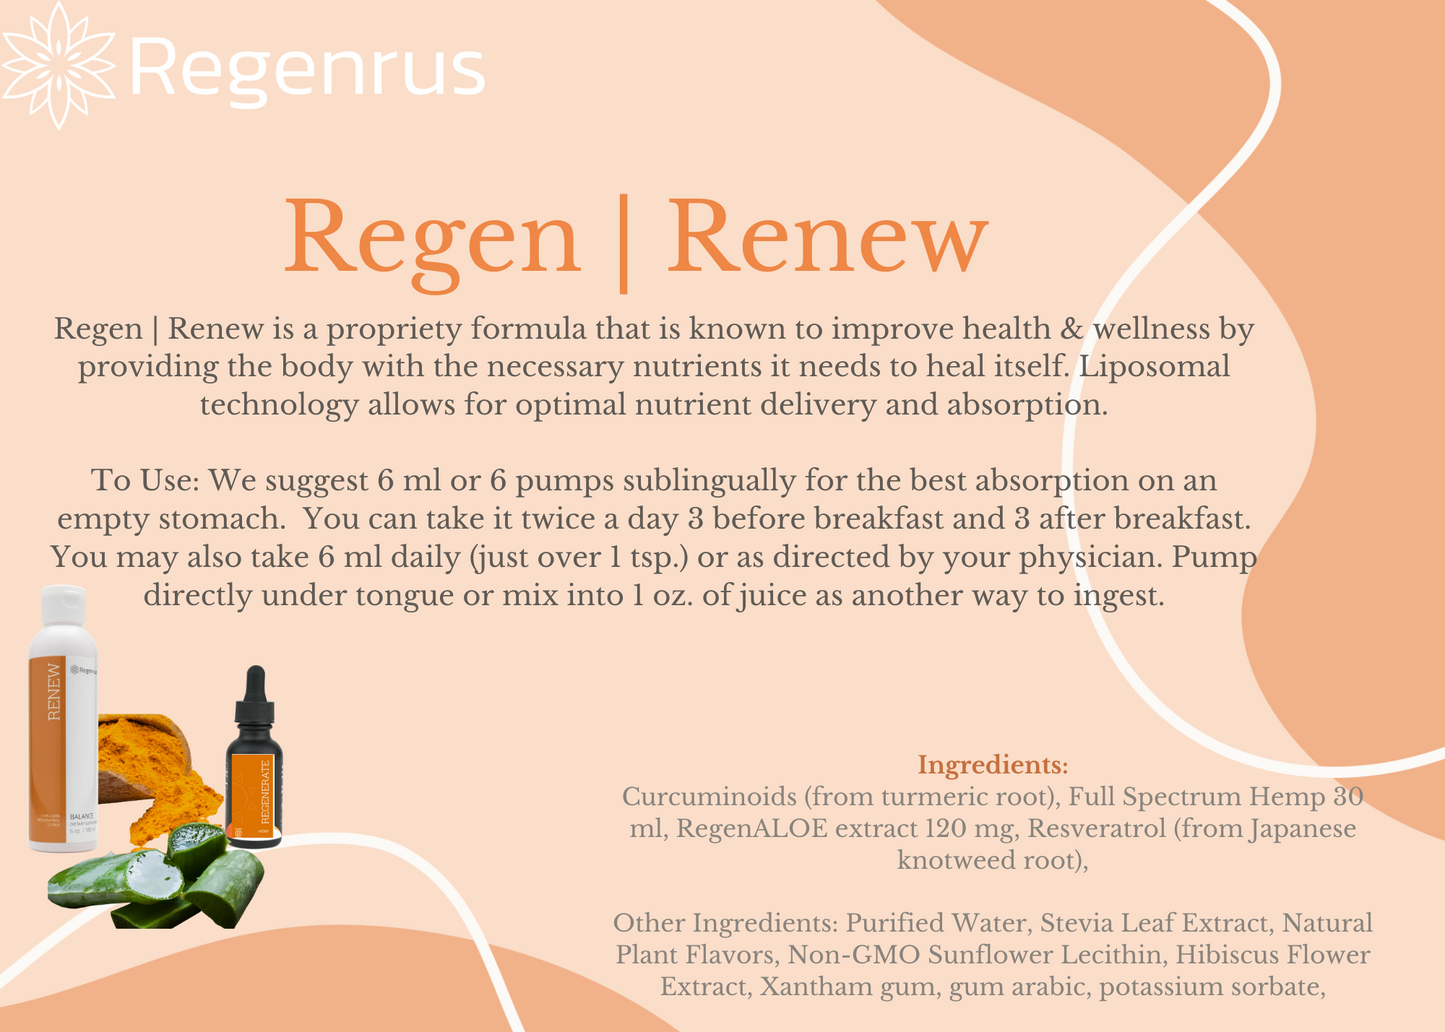 NEW REGEN + RENEW